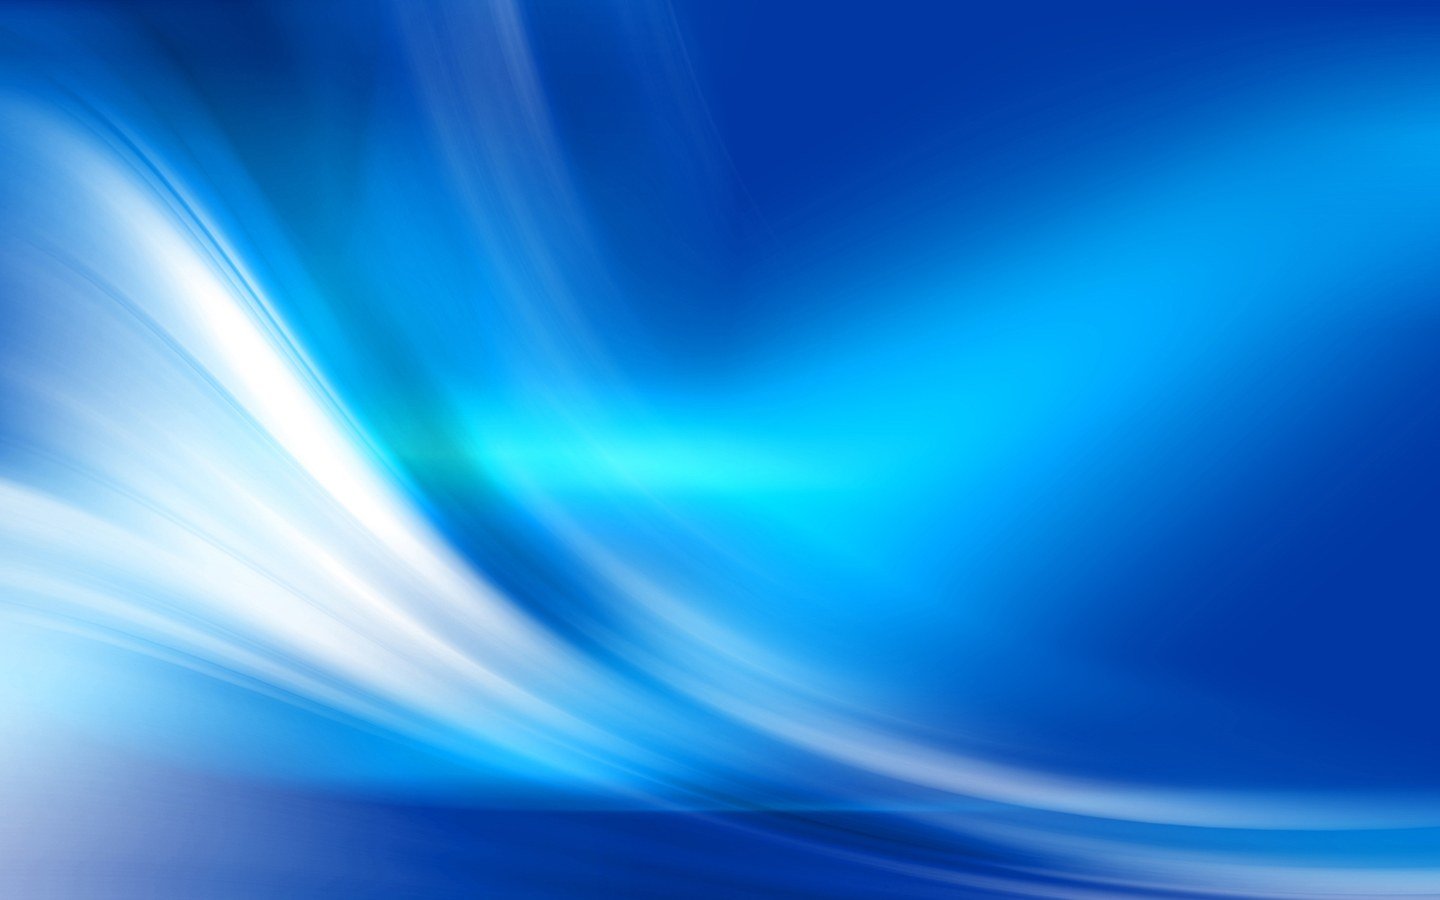 Blue Abstract Light Effect 1440900 Wallpaper Wide Screen Wallpaper 1440x900